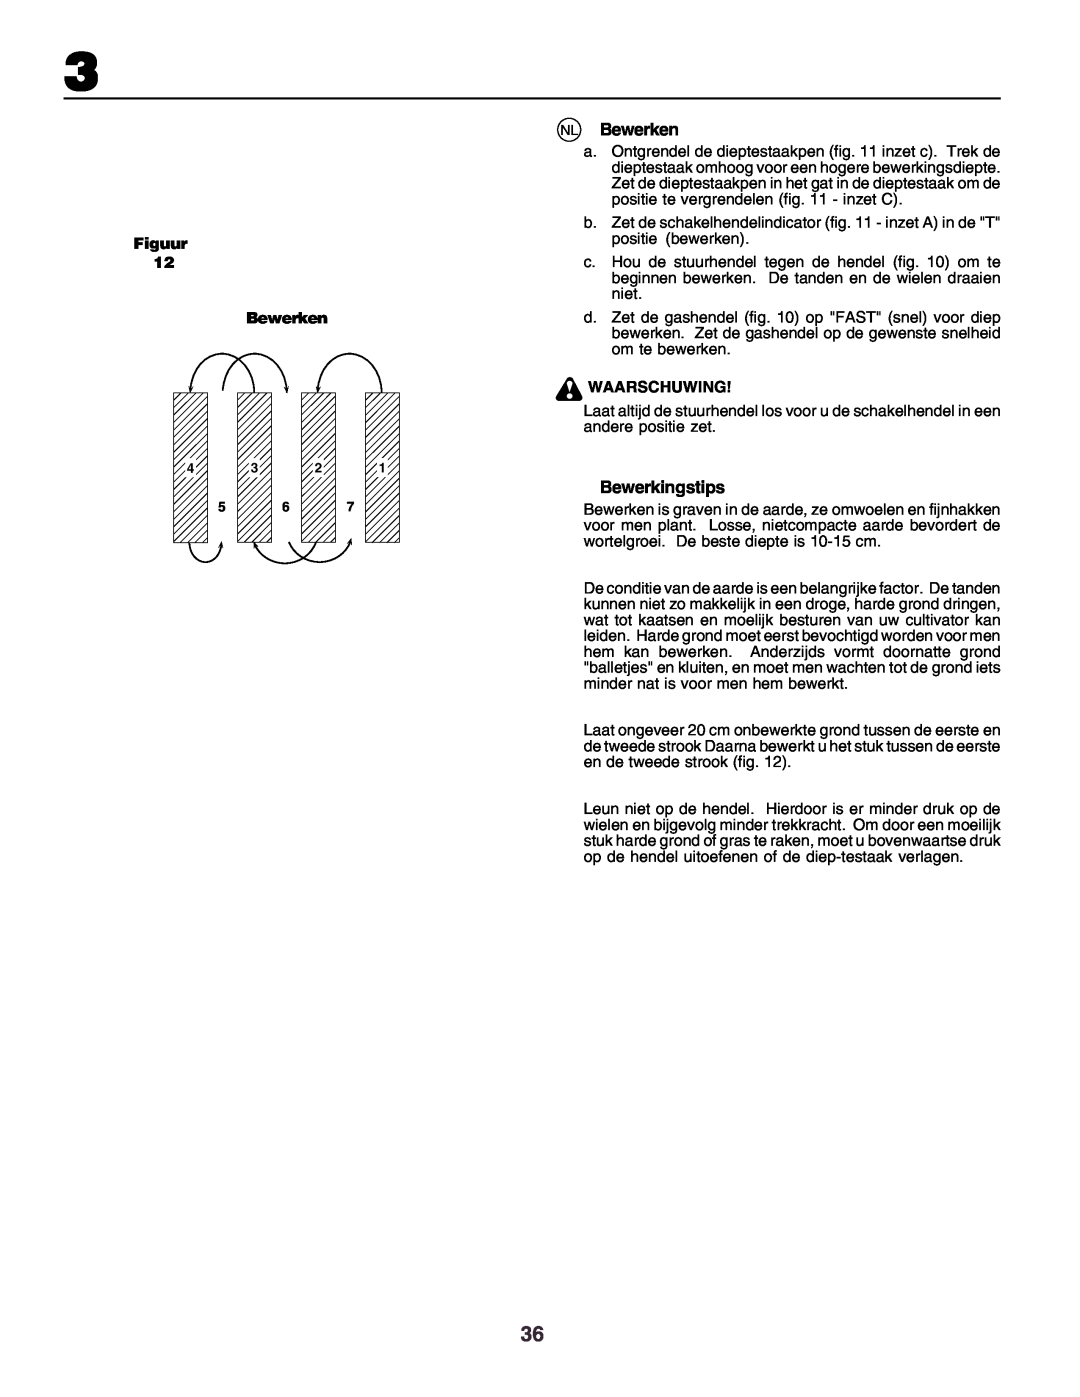 Husqvarna crt51 instruction manual NL Bewerken, Bewerkingstips, Figuur Bewerken, Waarschuwing 